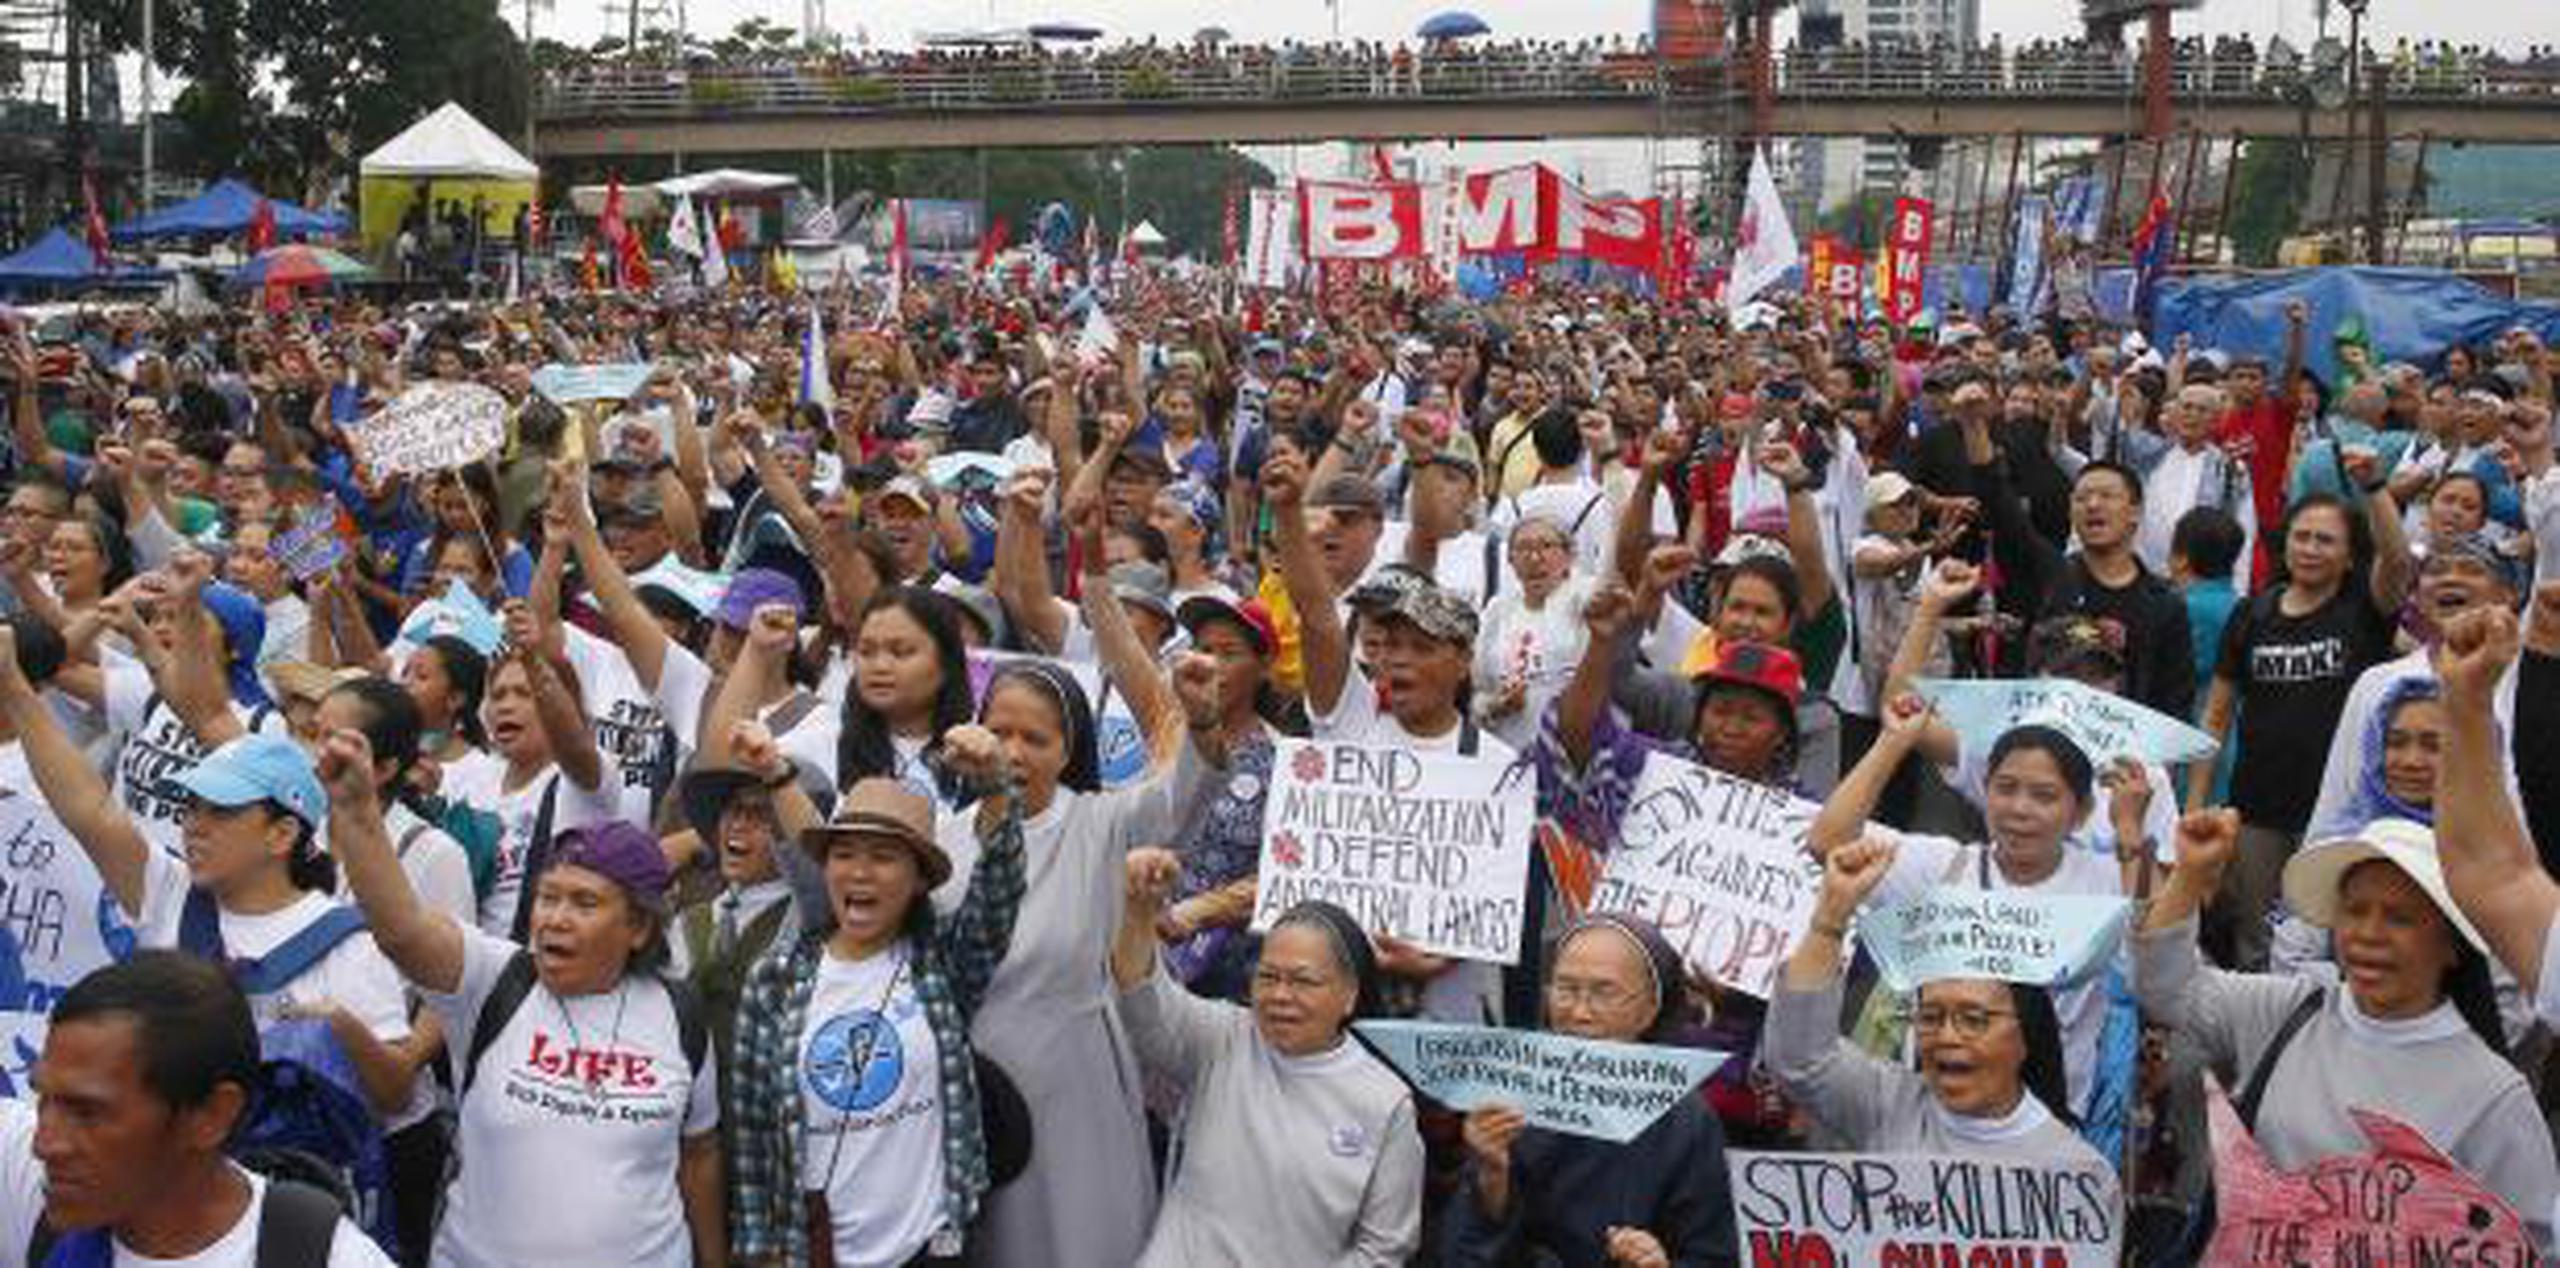 Más de 100 mil personas marcharan por la ciudad para reclamar reformas democráticas y una investigación sobre el uso de la fuerza por parte de la policía para dispersar protestas anteriores. (AP)